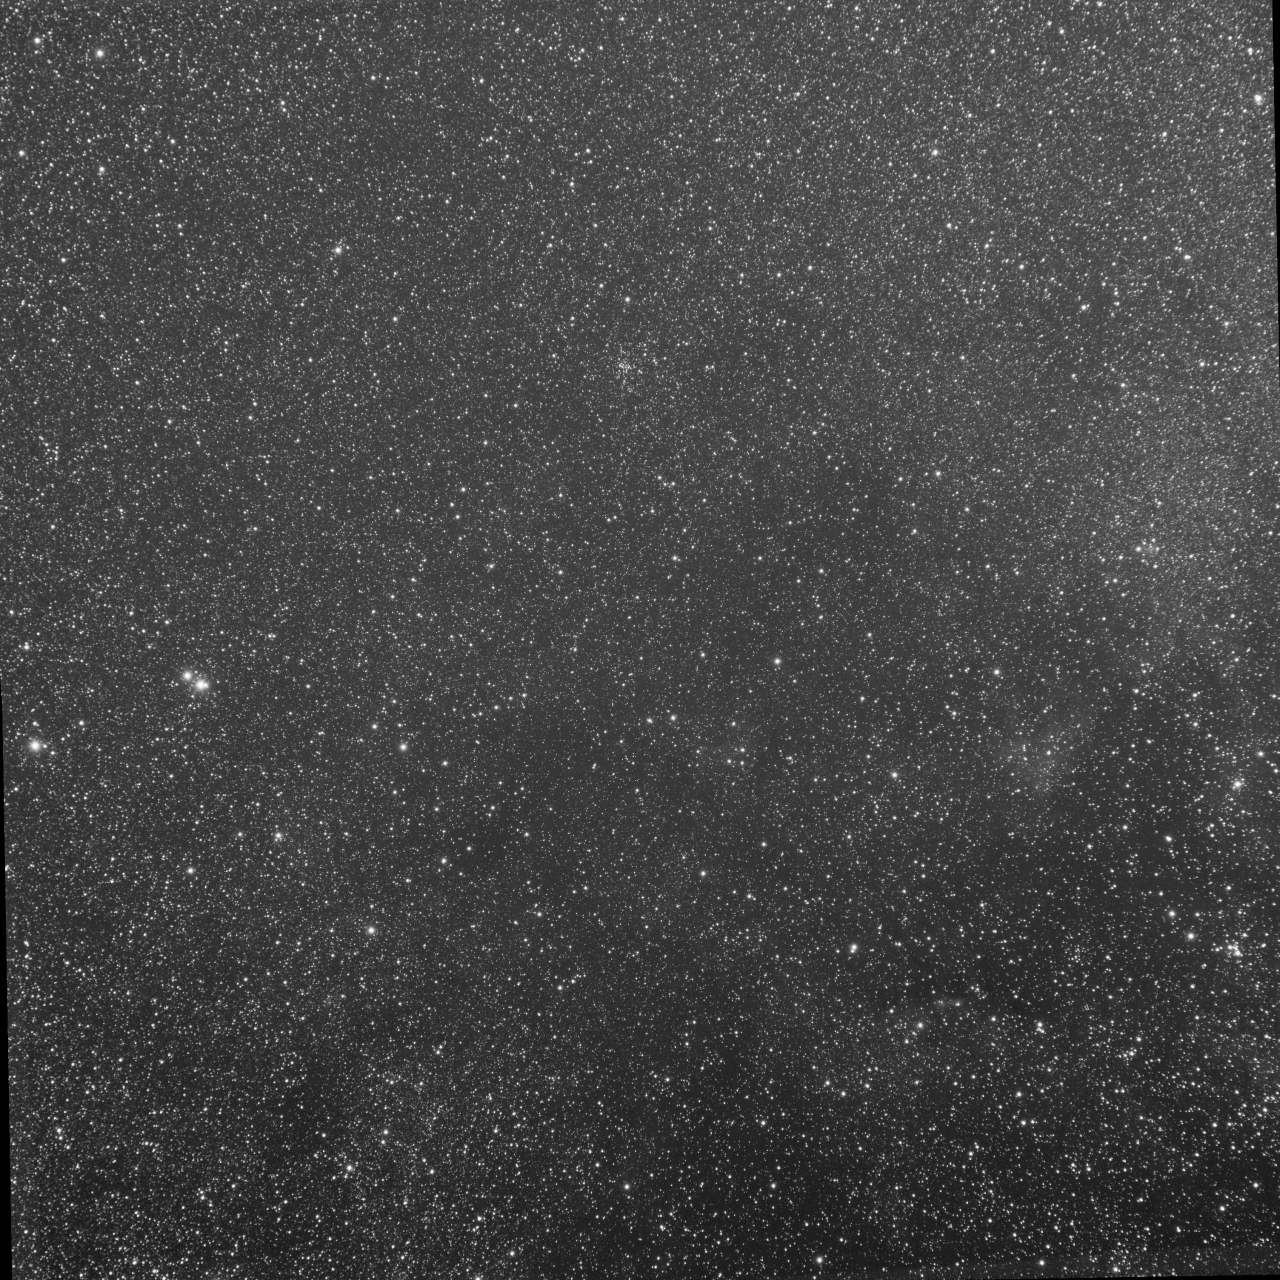 Cygnus near DWB111 - G